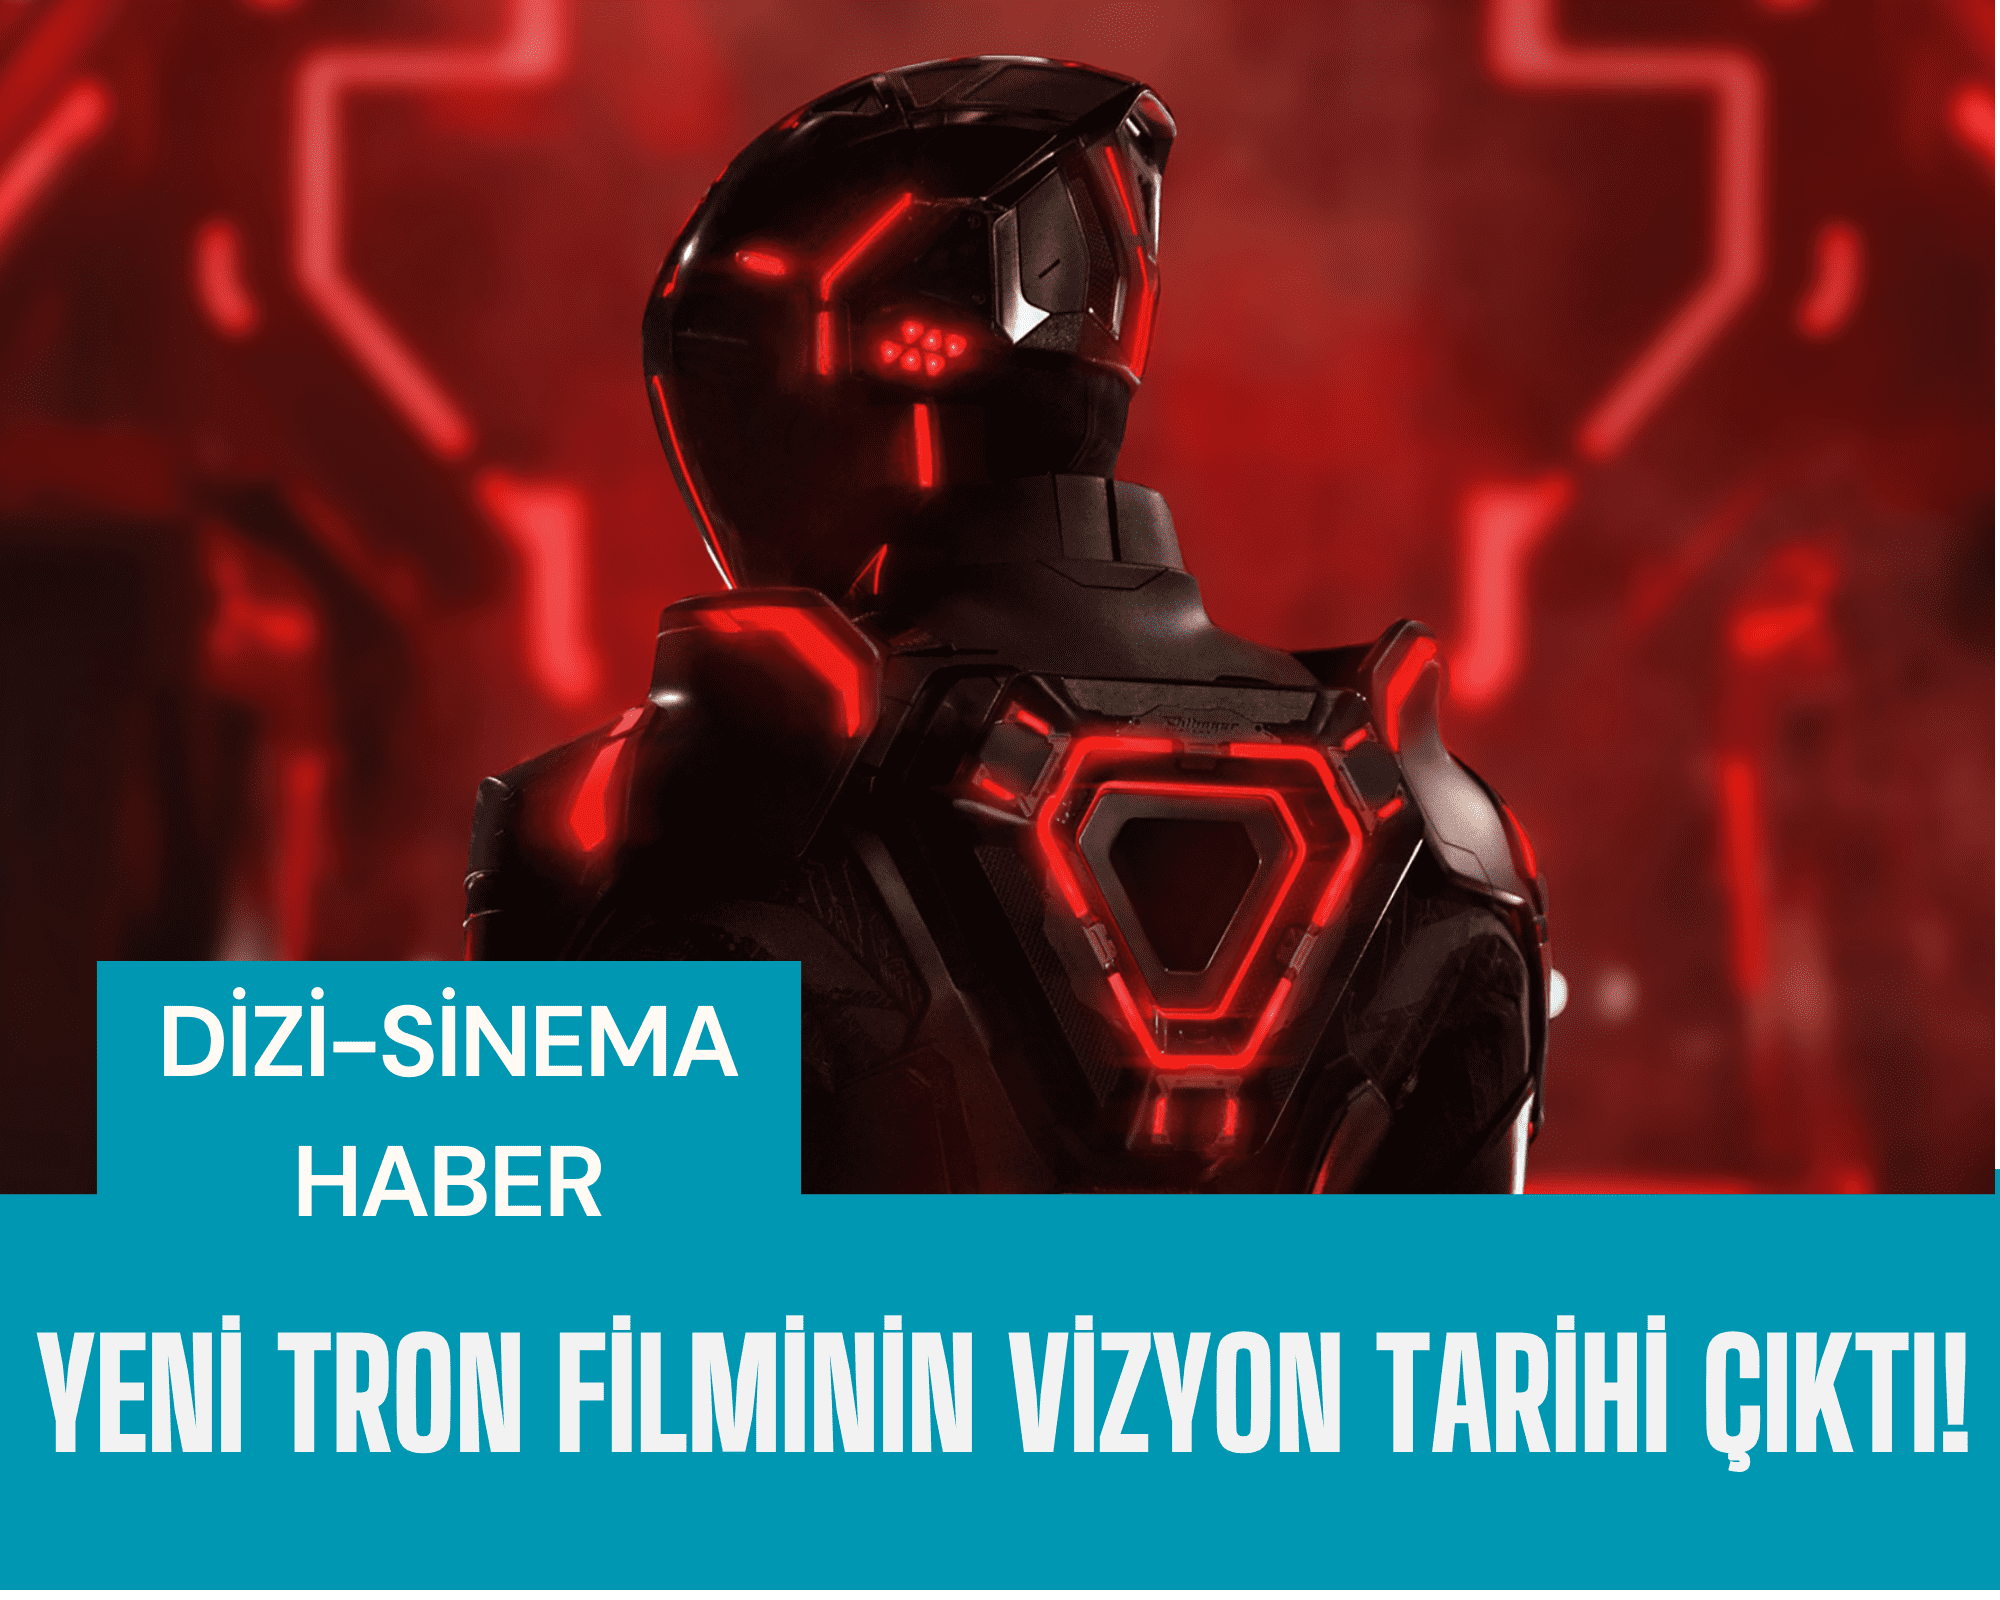 Tron: Ares filminin neon ışıklı logo tasarımı ve vizyon tarihini gösteren afiş.